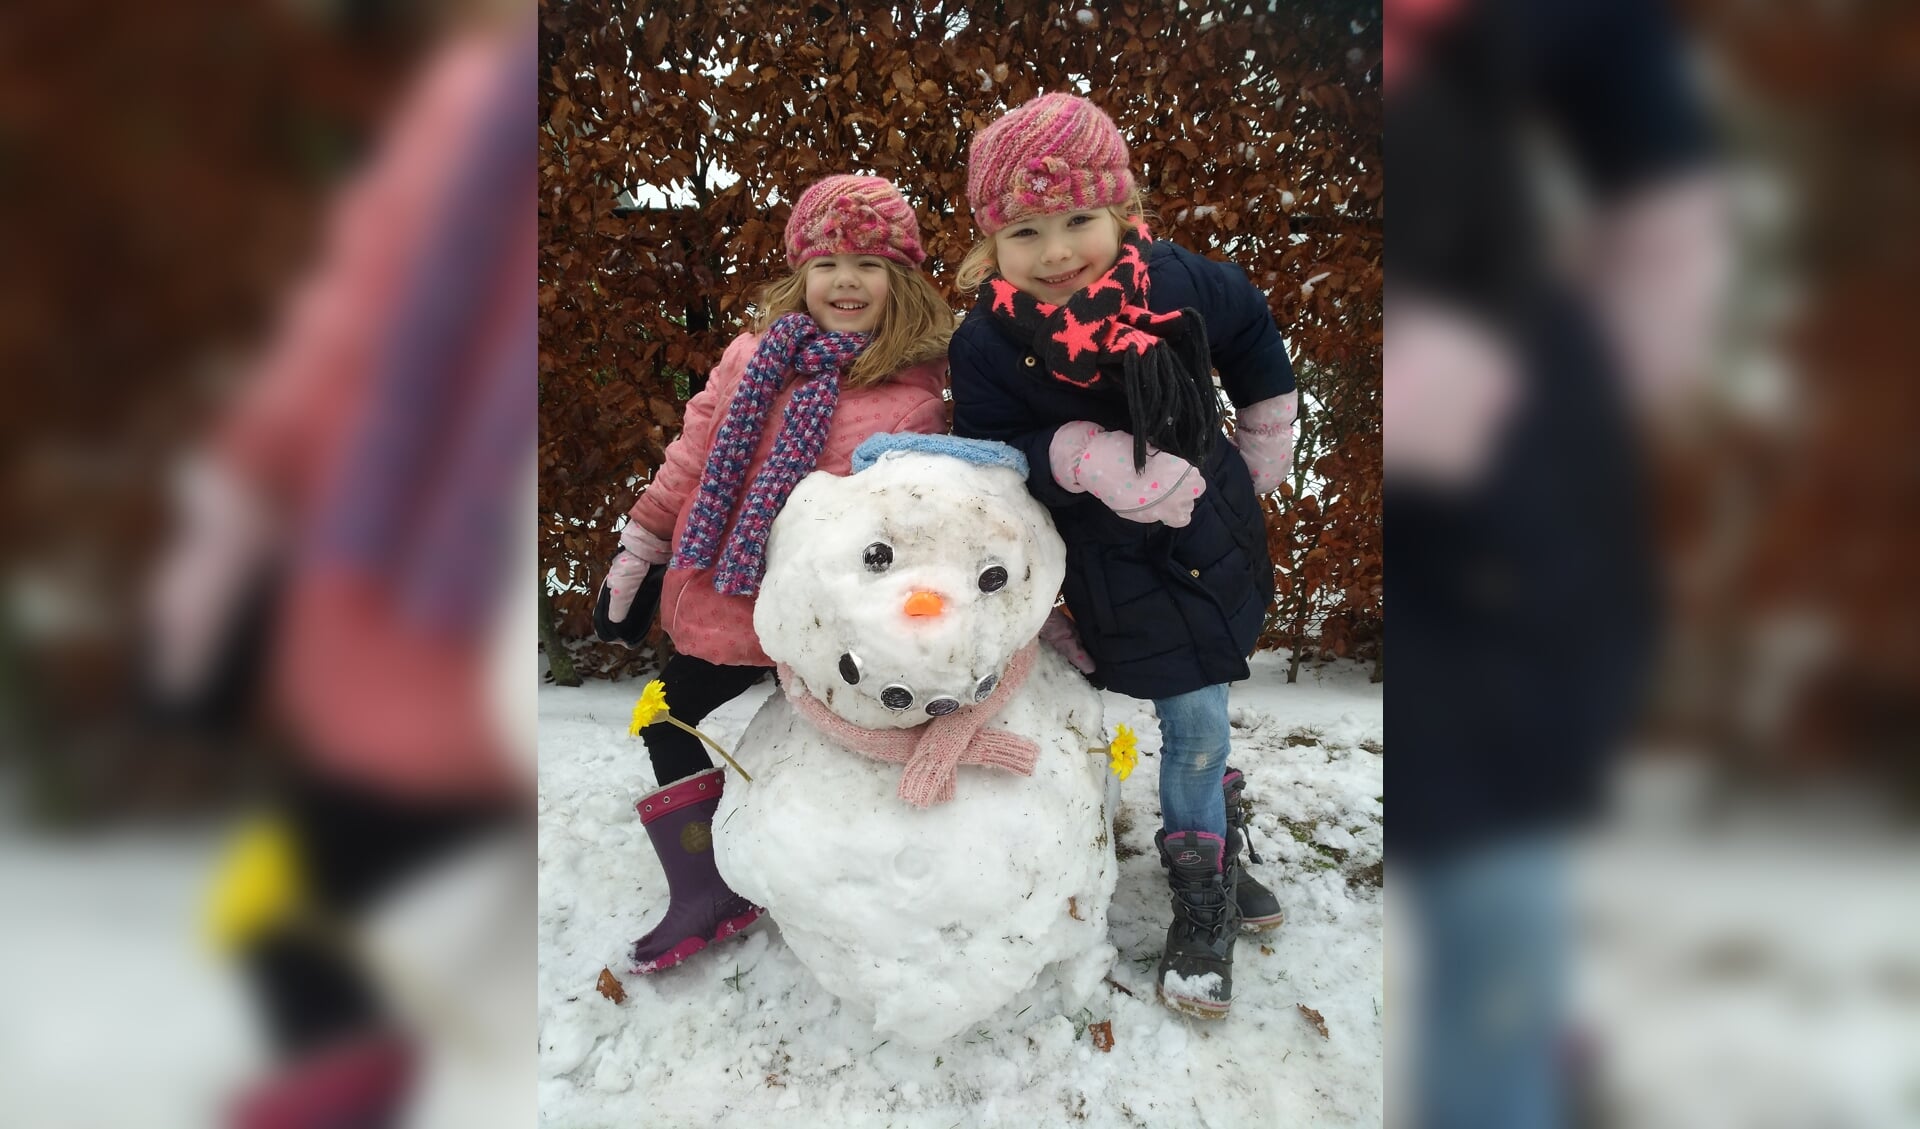 Deze twee meiden hebben een mooie sneeuwpop gemaakt.